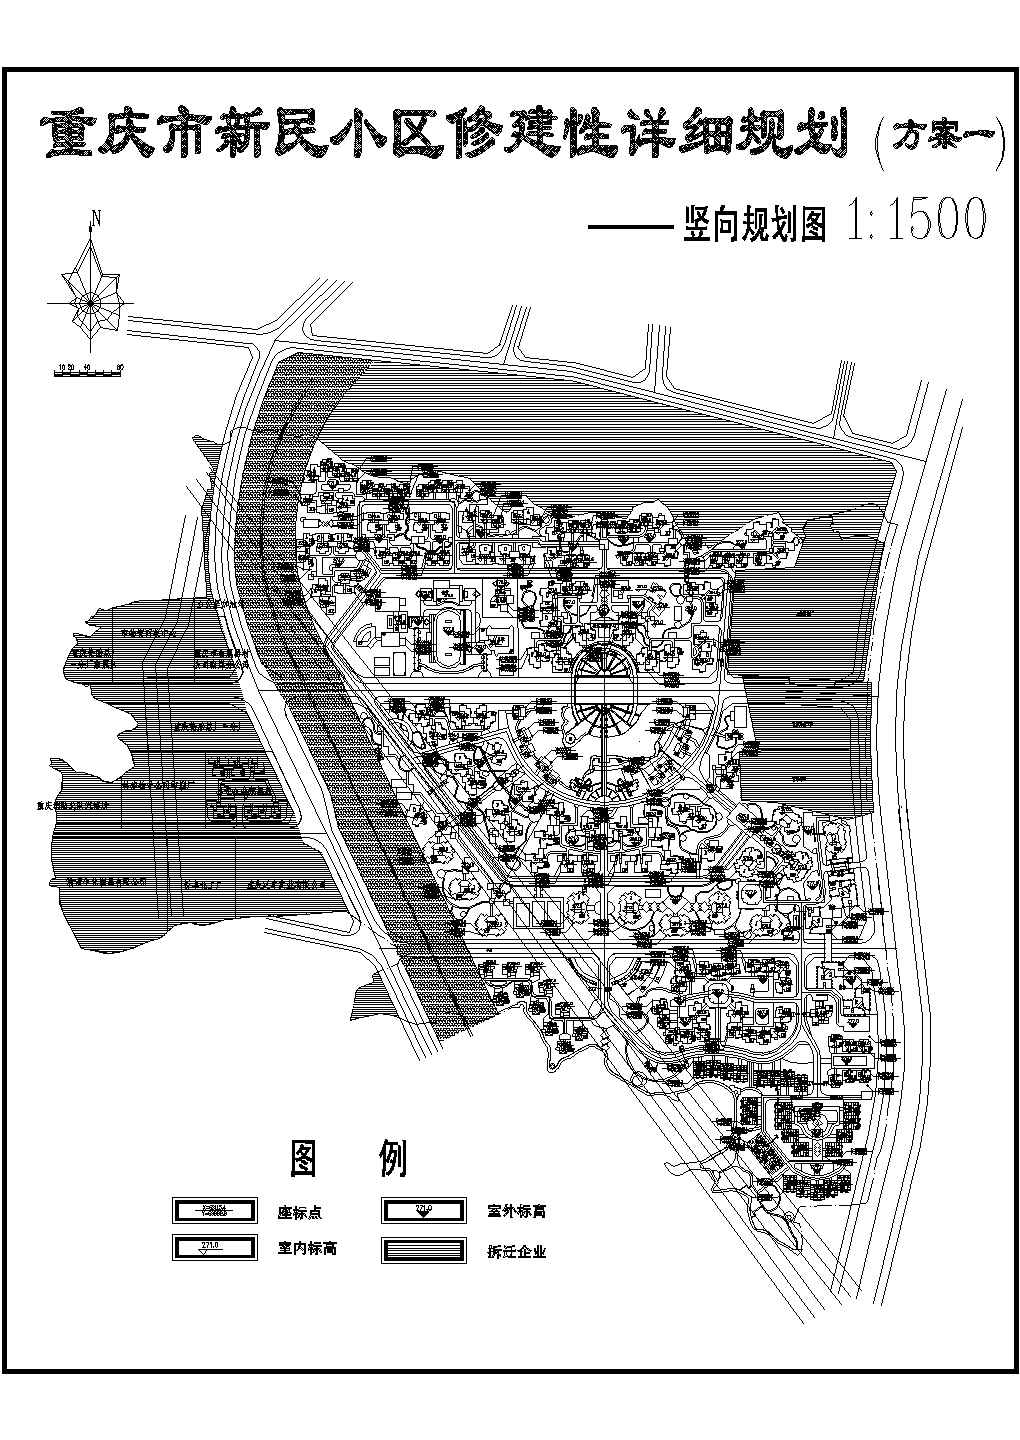 重庆新民小区规划施工图